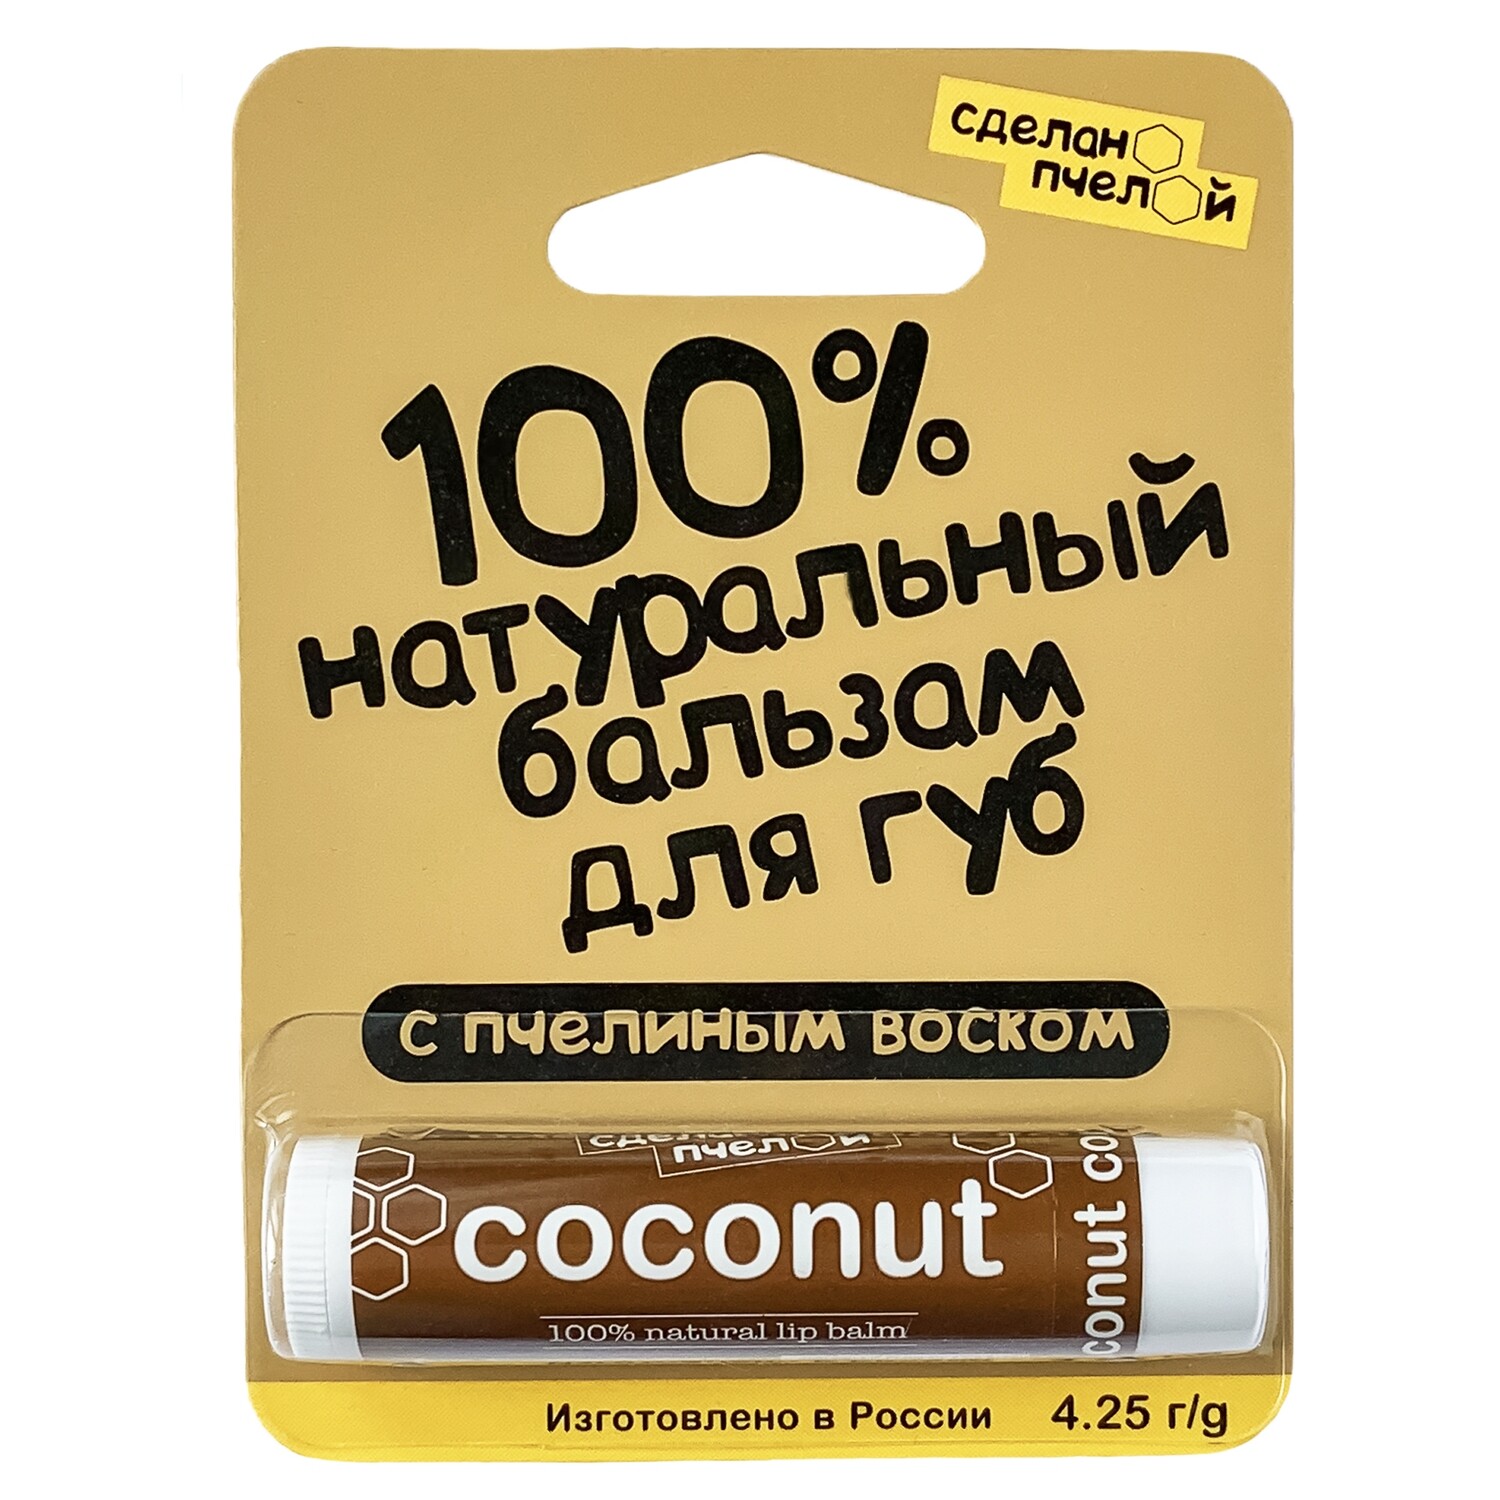 100% натуральный бальзам для губ с пчелиным воском "Coconut" 4,25 гр